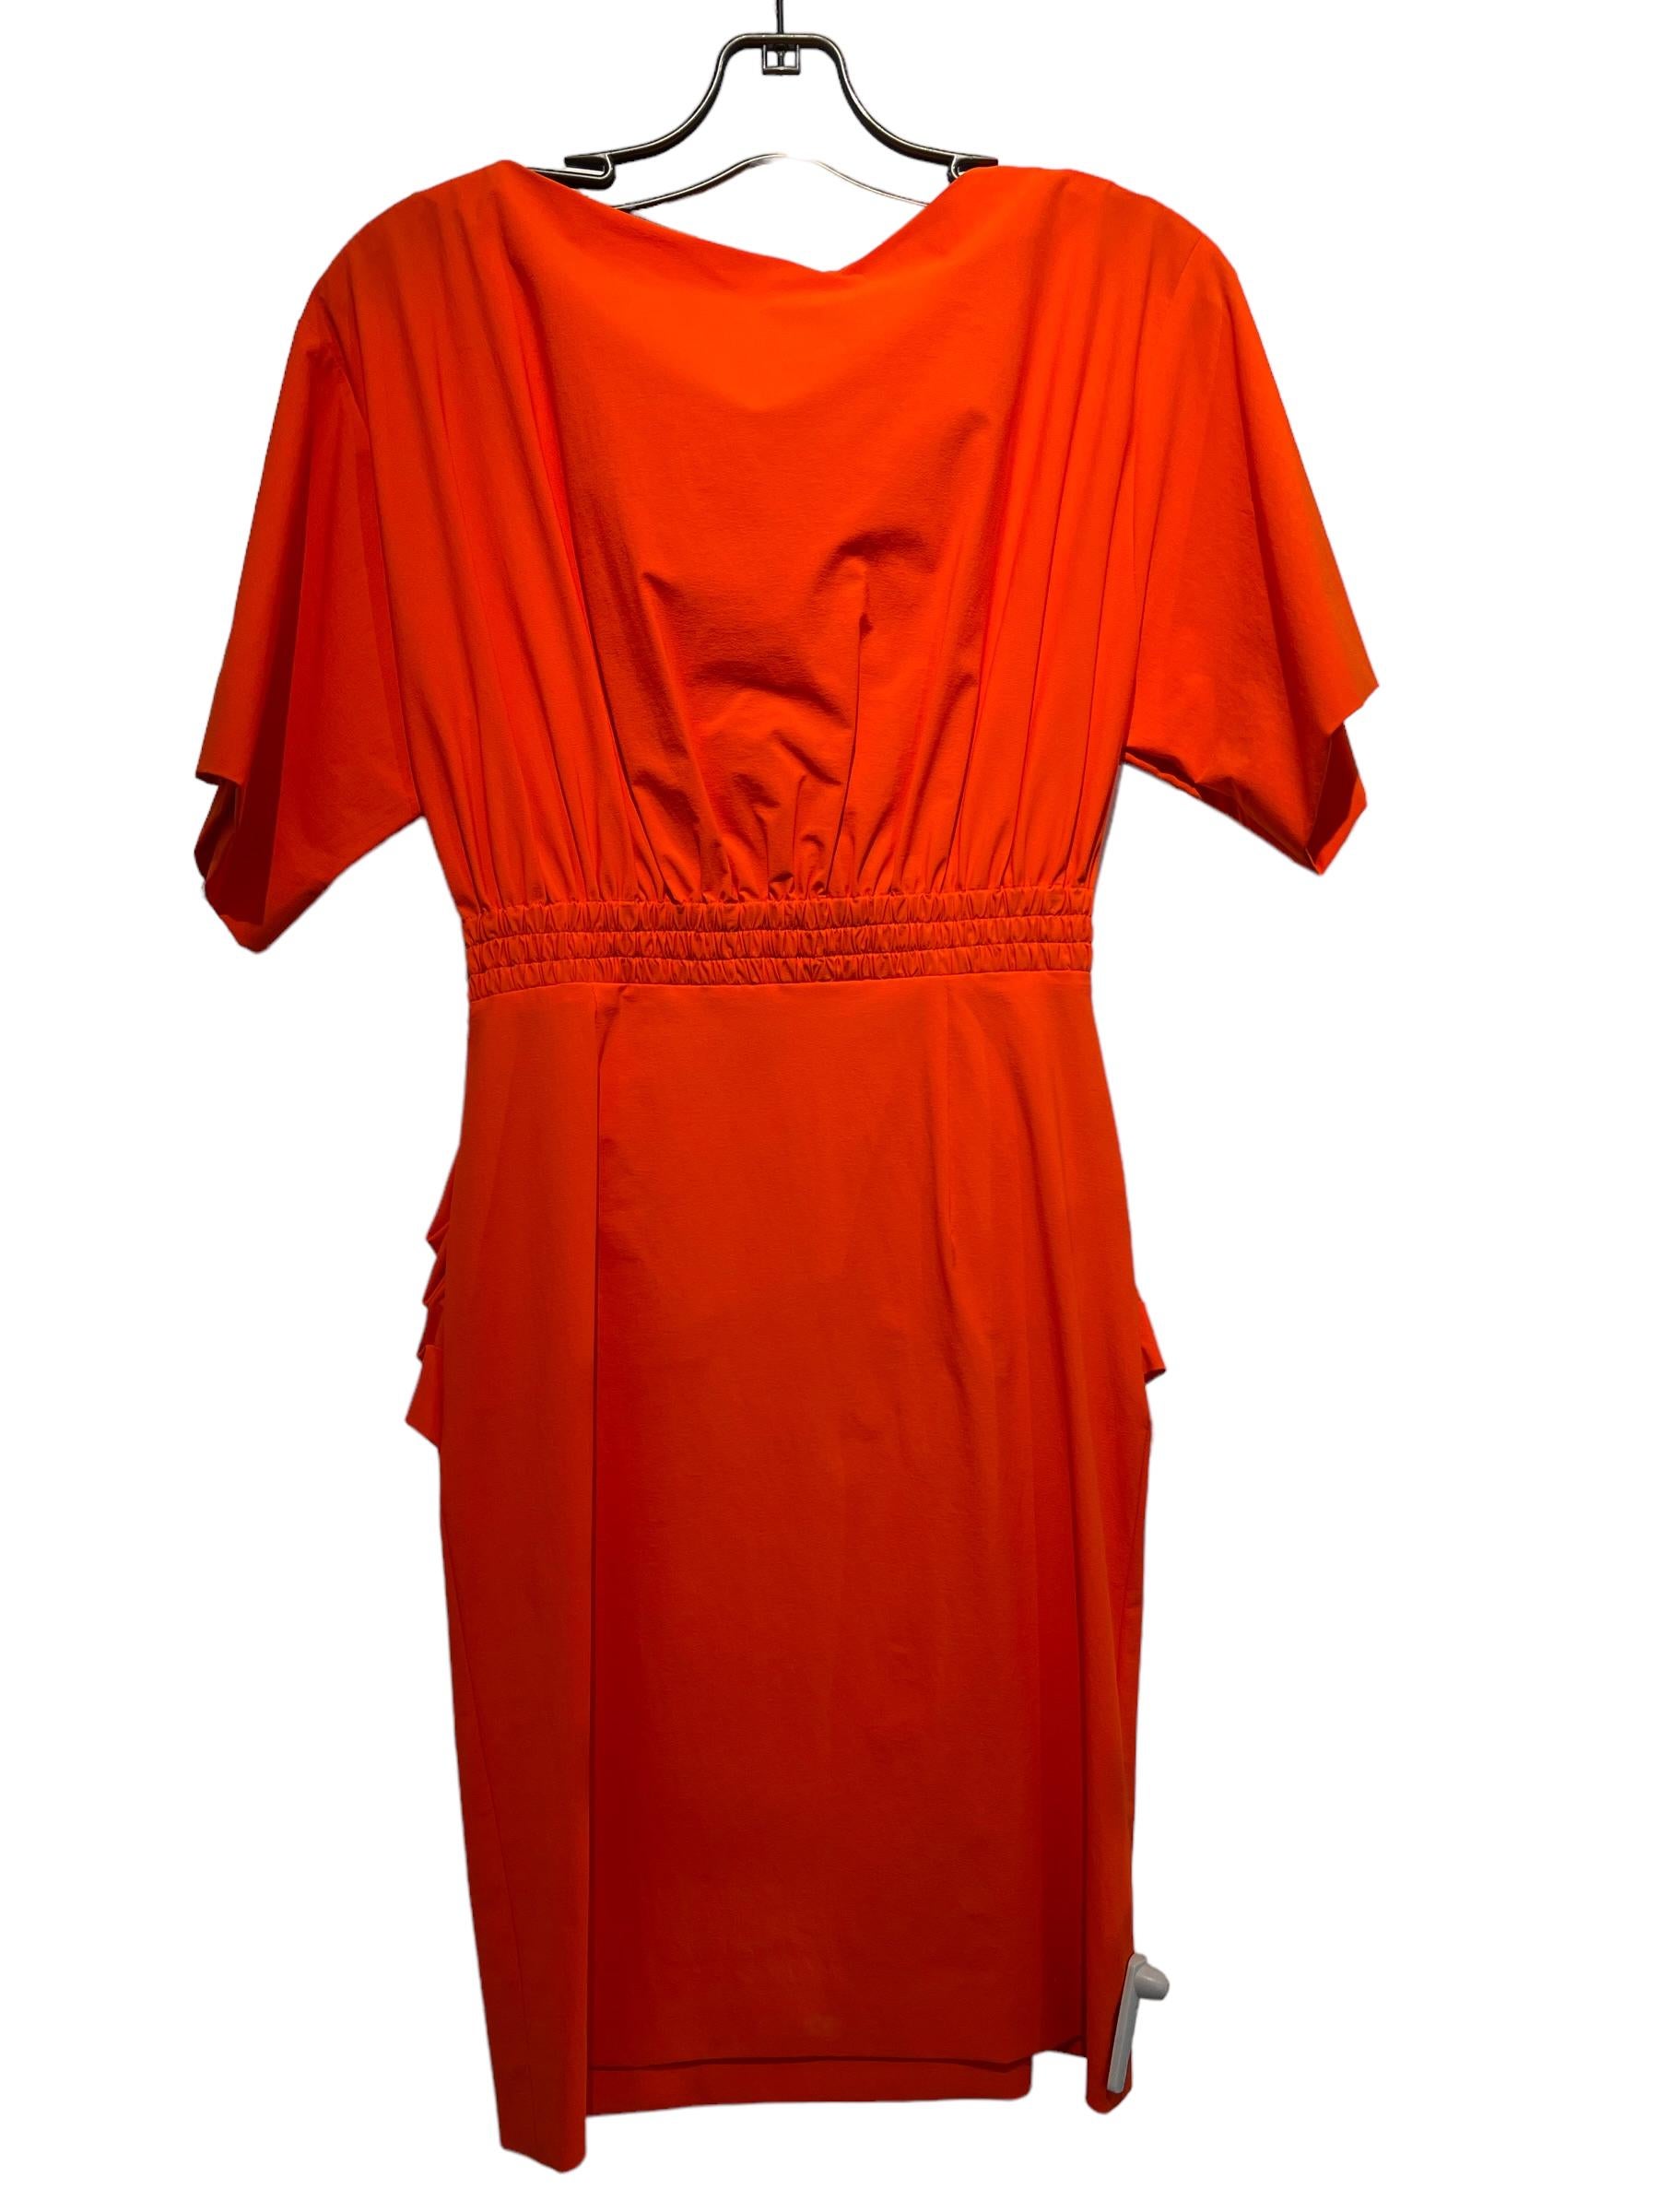 emilio pucci orange dress